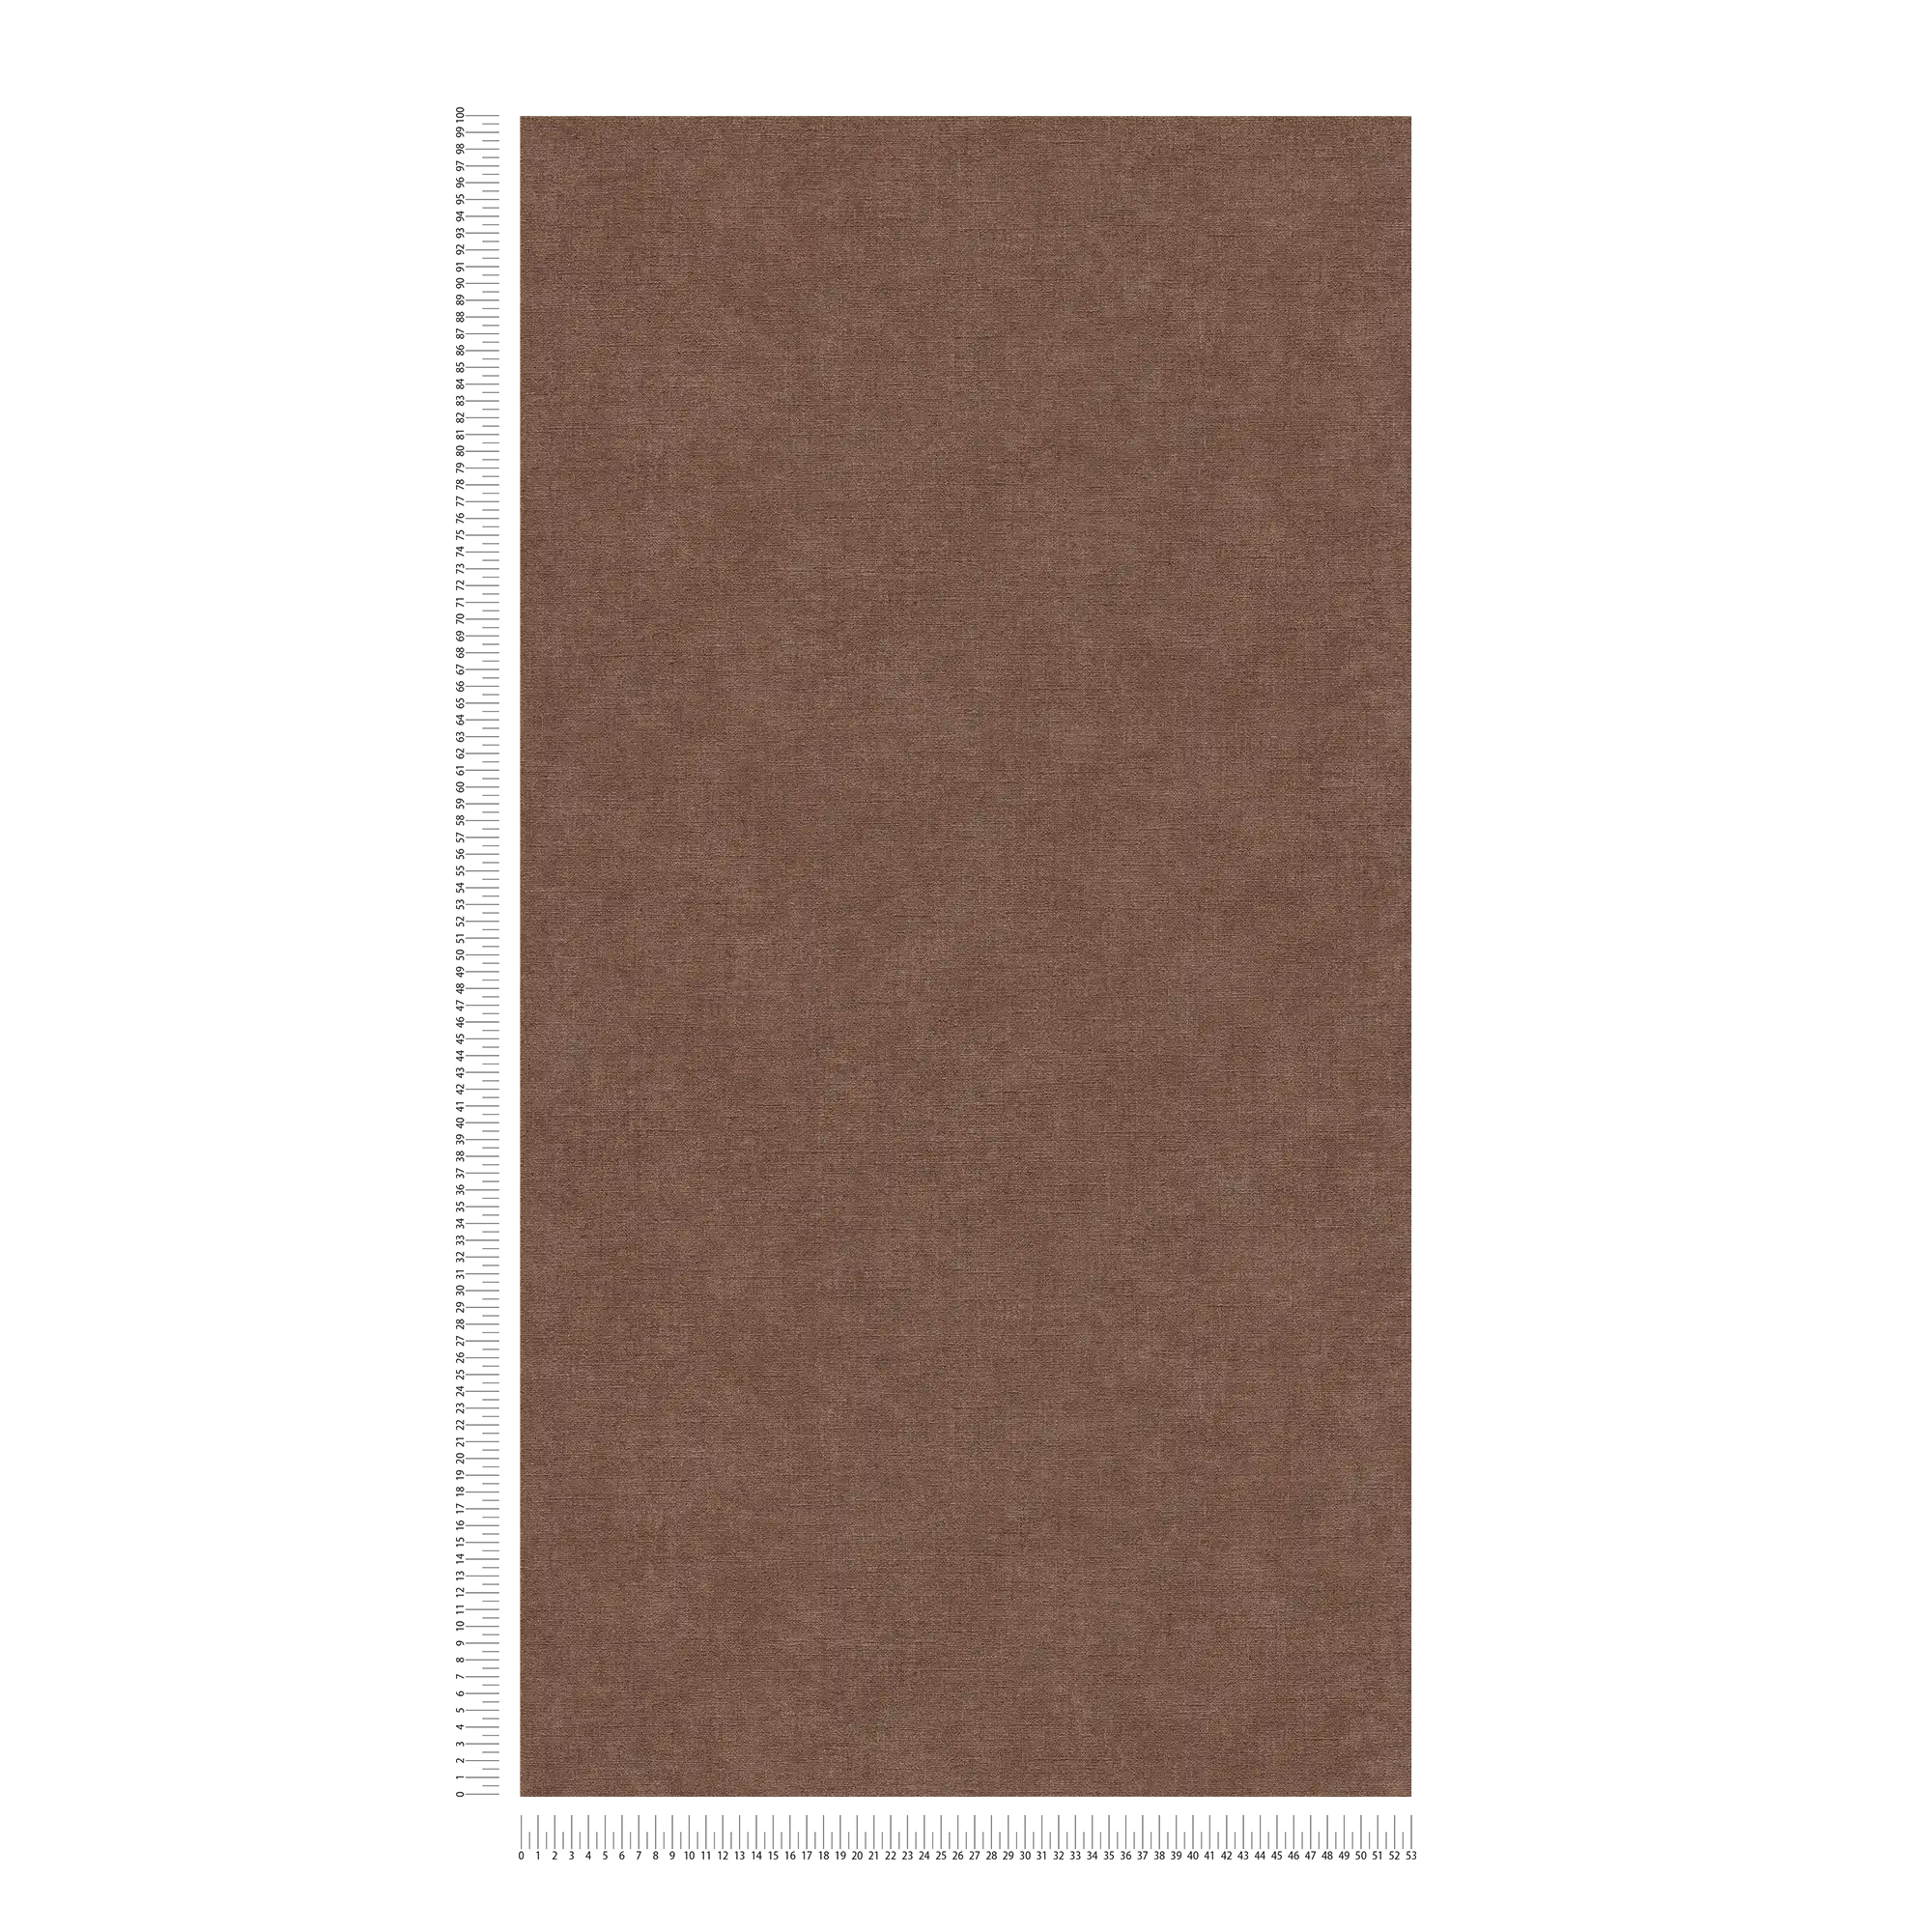             Carta da parati monocolore in tessuto non tessuto con texture leggera - marrone, rosso
        